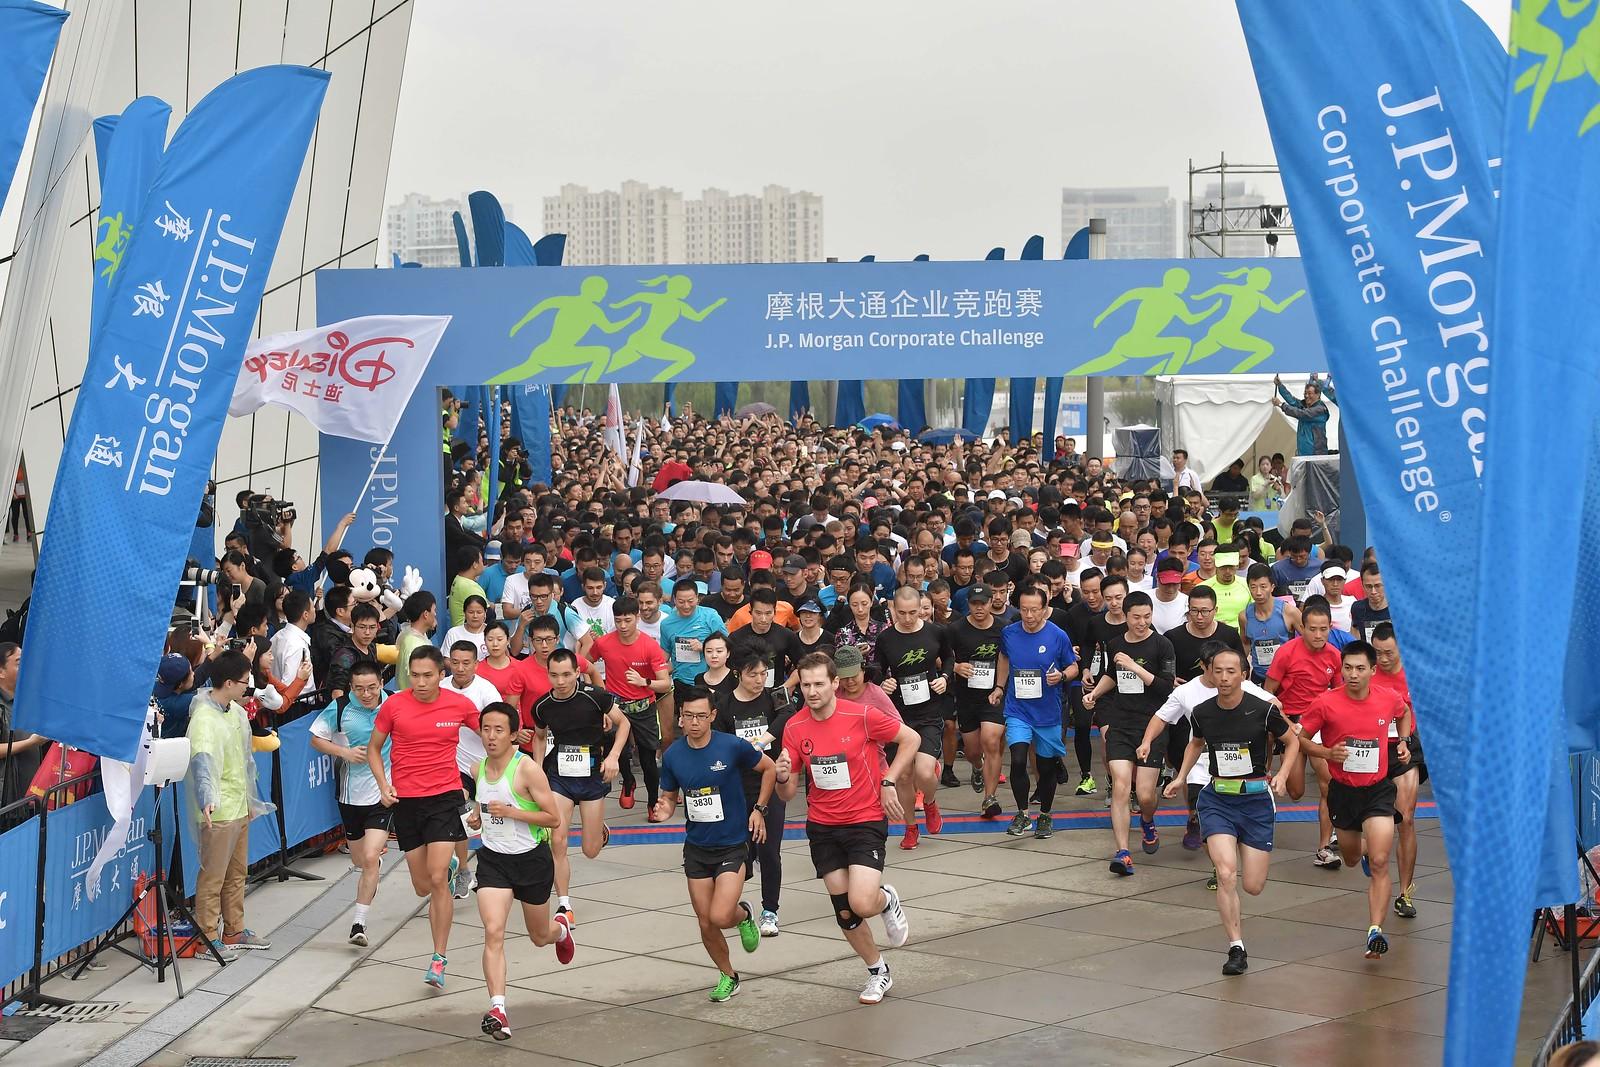 Shanhai runners at the starting line